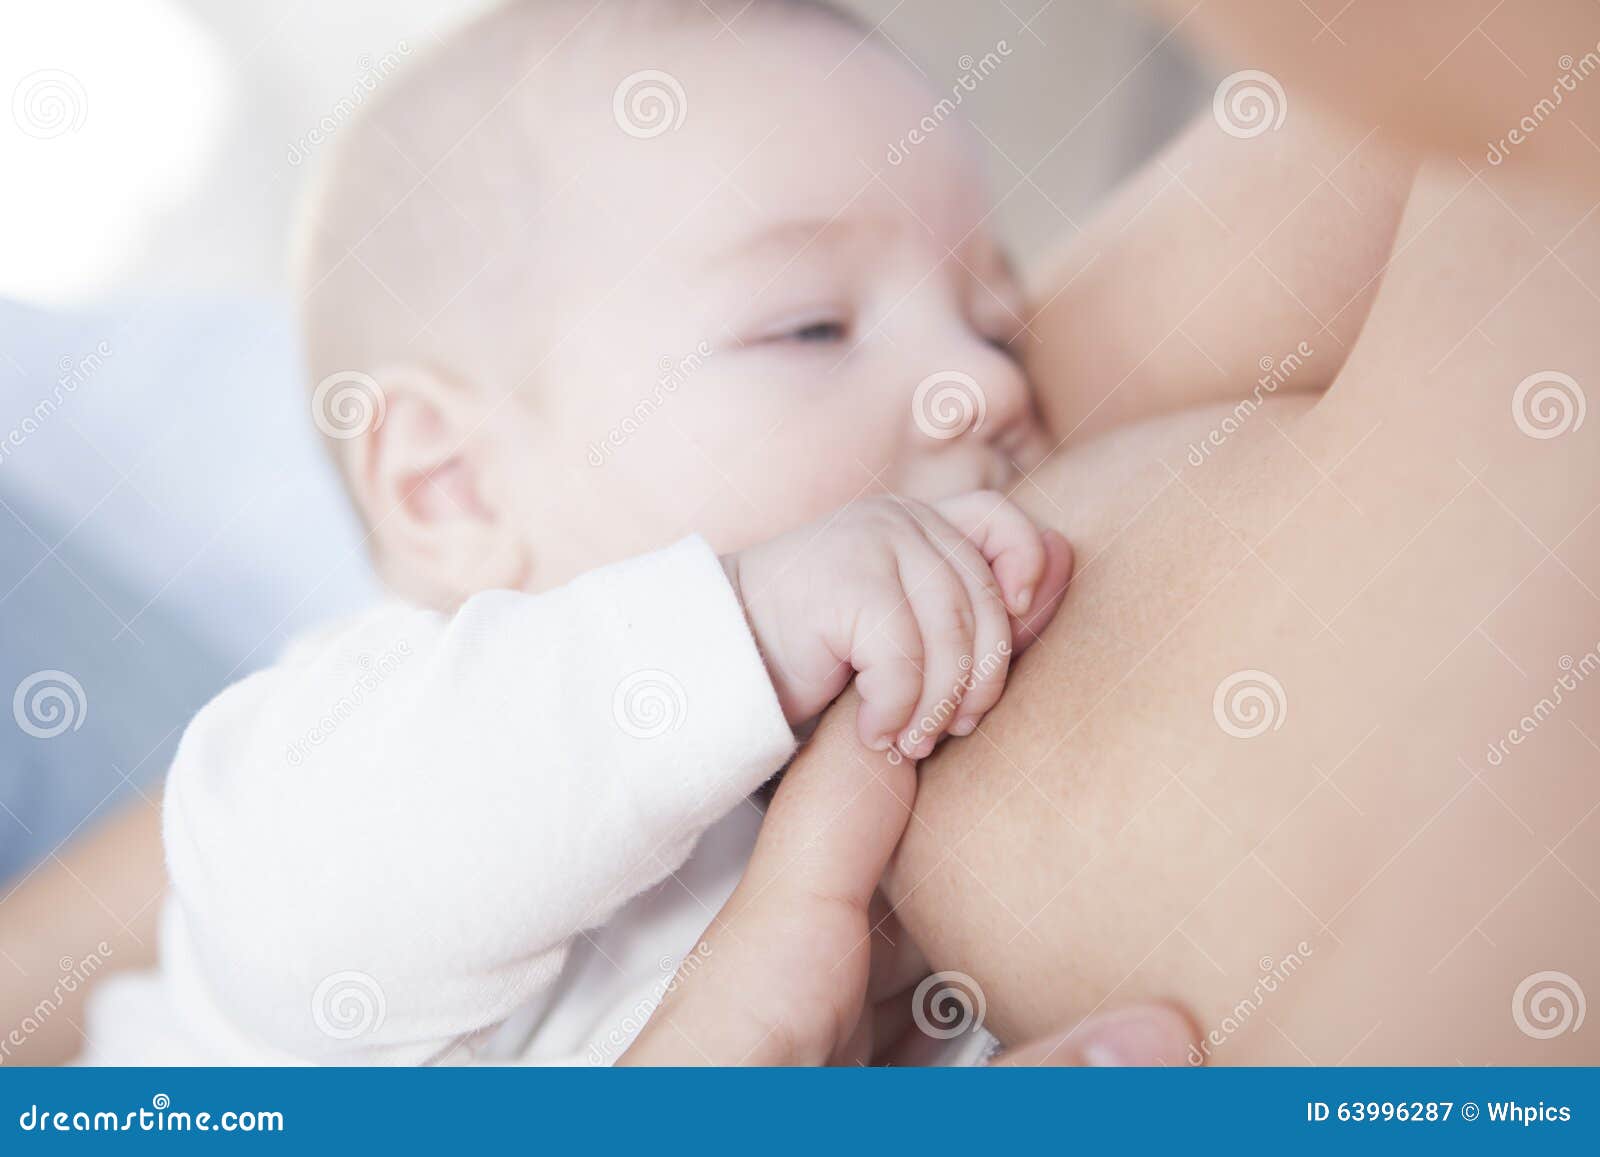 Le Bebe Tient Sa Main De Maman Tandis Qu Il Est Allaite Image Stock Image Du Sain Main